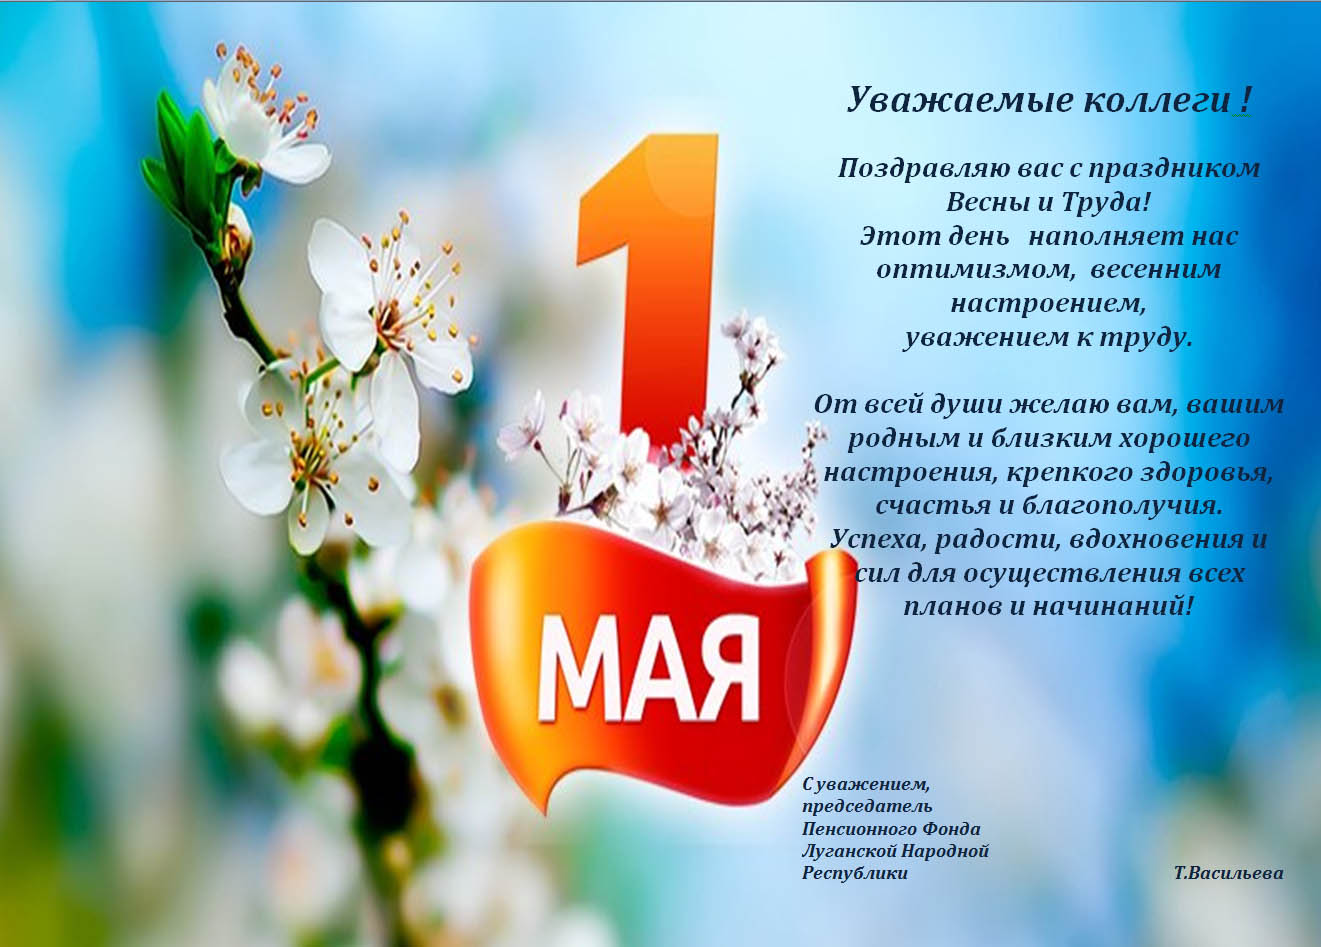 Праздник 1 мая официальное название. 1 Мая. 1 Мая день весны и труда. Поздравляем с праздником весны и труда. Поздравление с 1 мая.